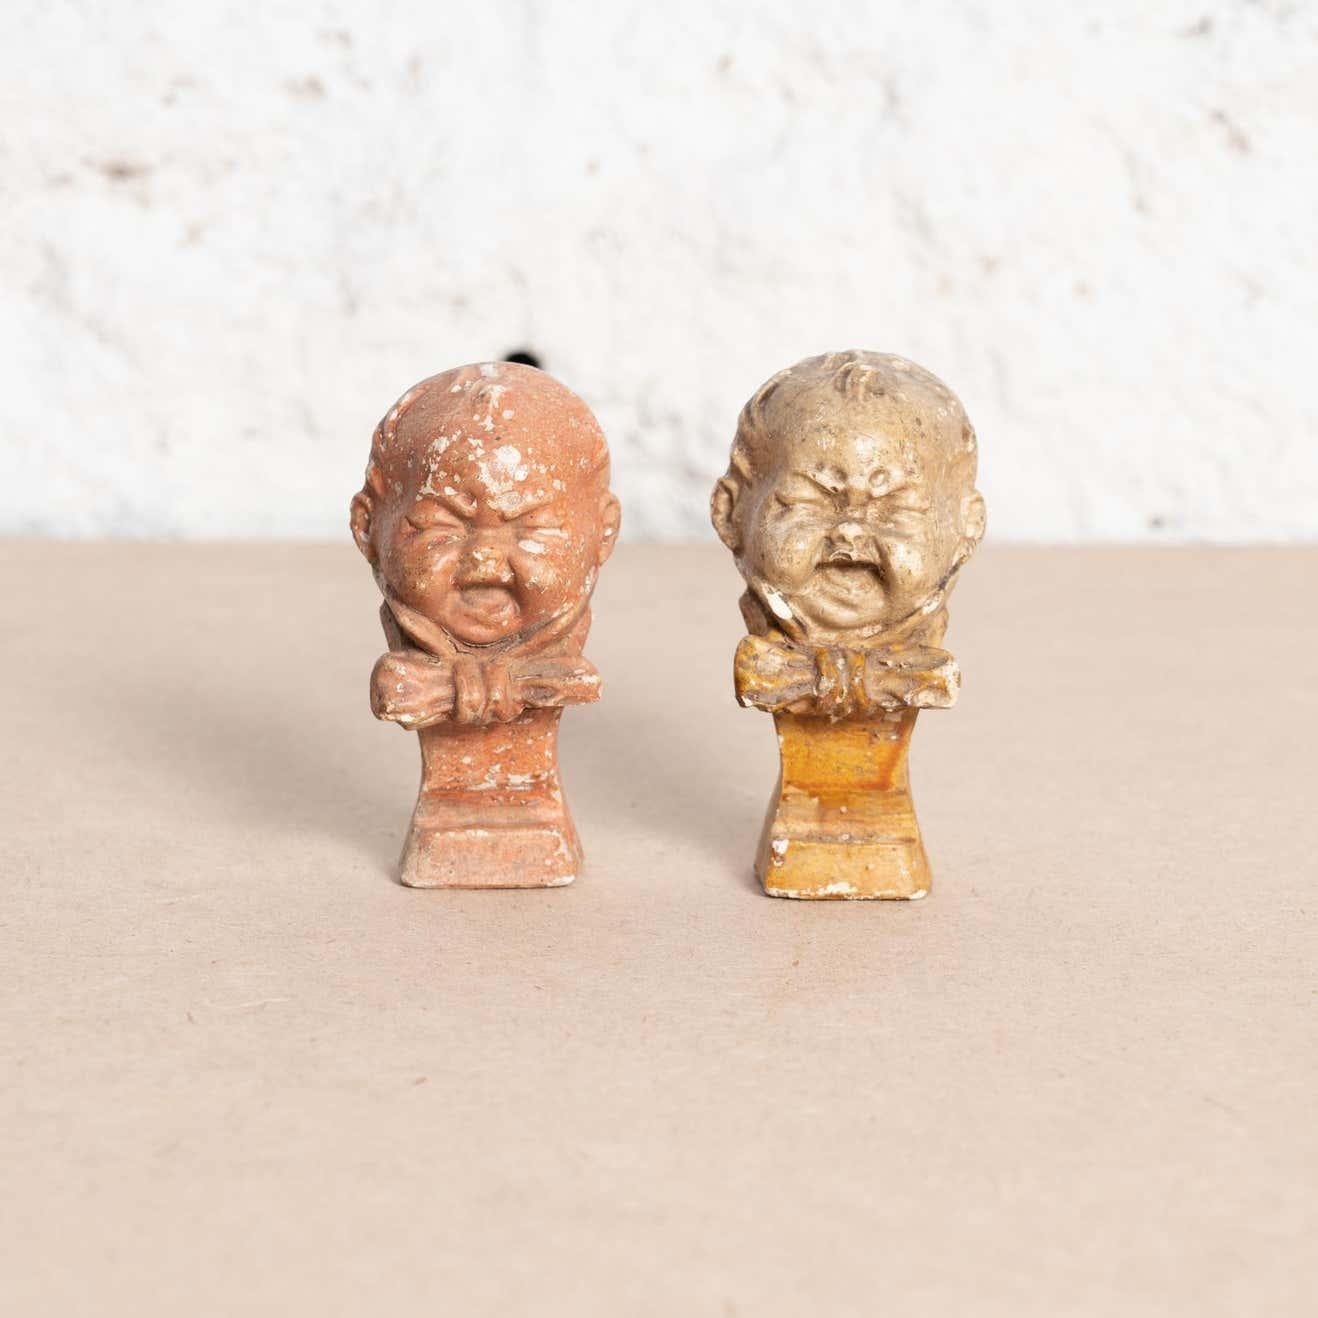 Satz von zwei handbemalten traditionellen Gipsfiguren mit weinendem Baby.

Hergestellt in einem traditionellen katalanischen Atelier in Spanien, um 1930.

Originaler Zustand mit geringen alters- und gebrauchsbedingten Abnutzungserscheinungen, der